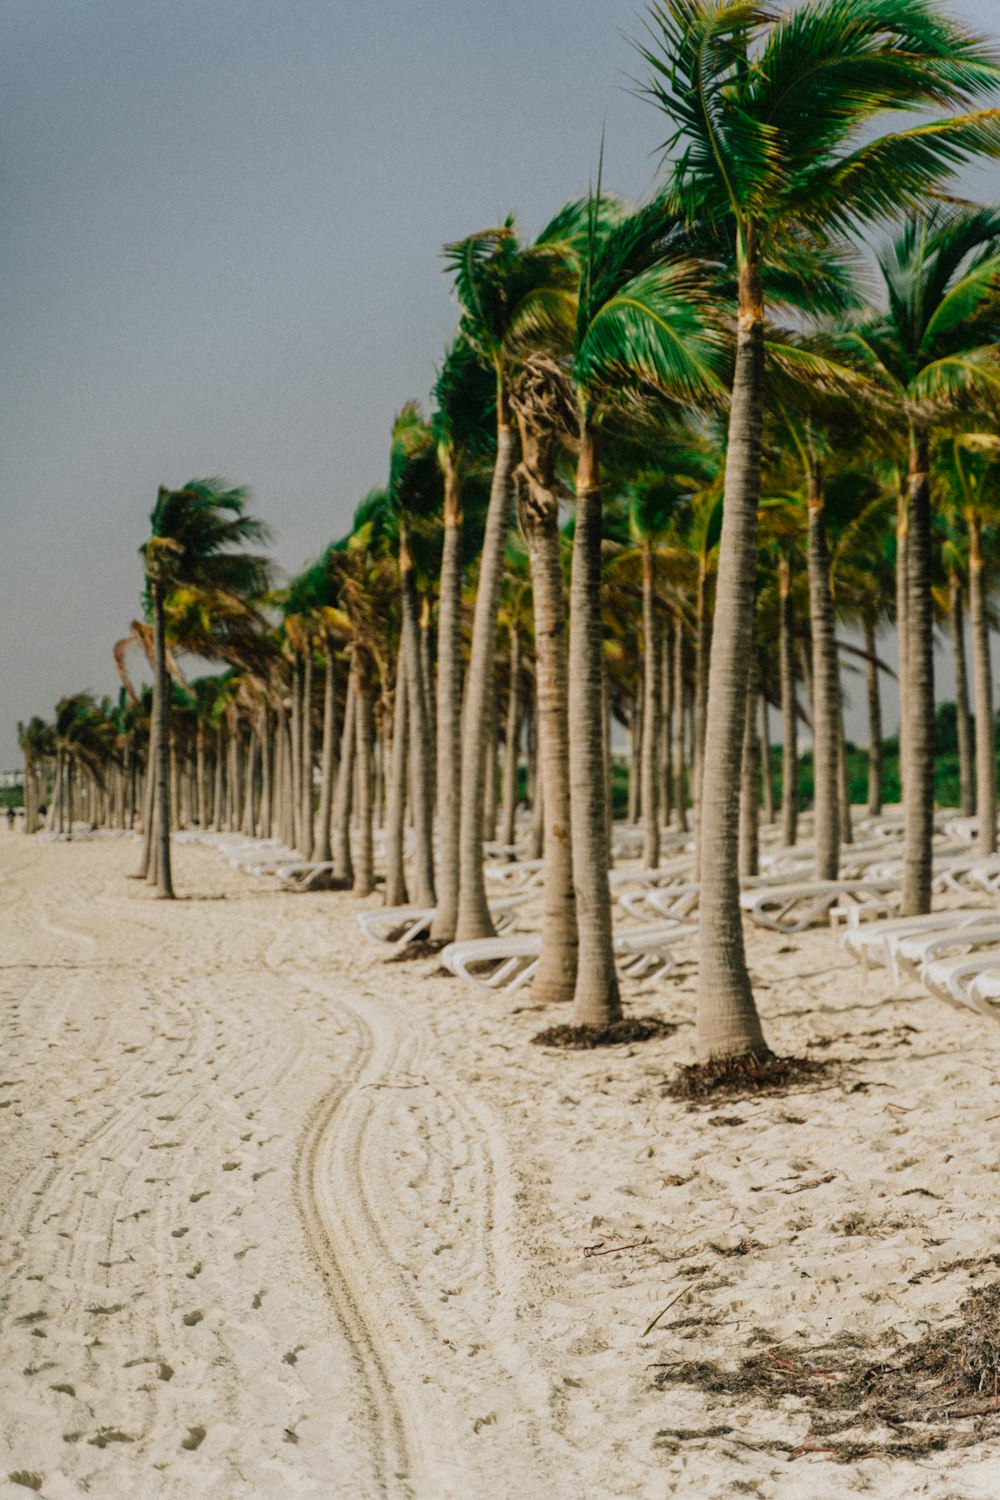 a row of palm trees on a sandy beach